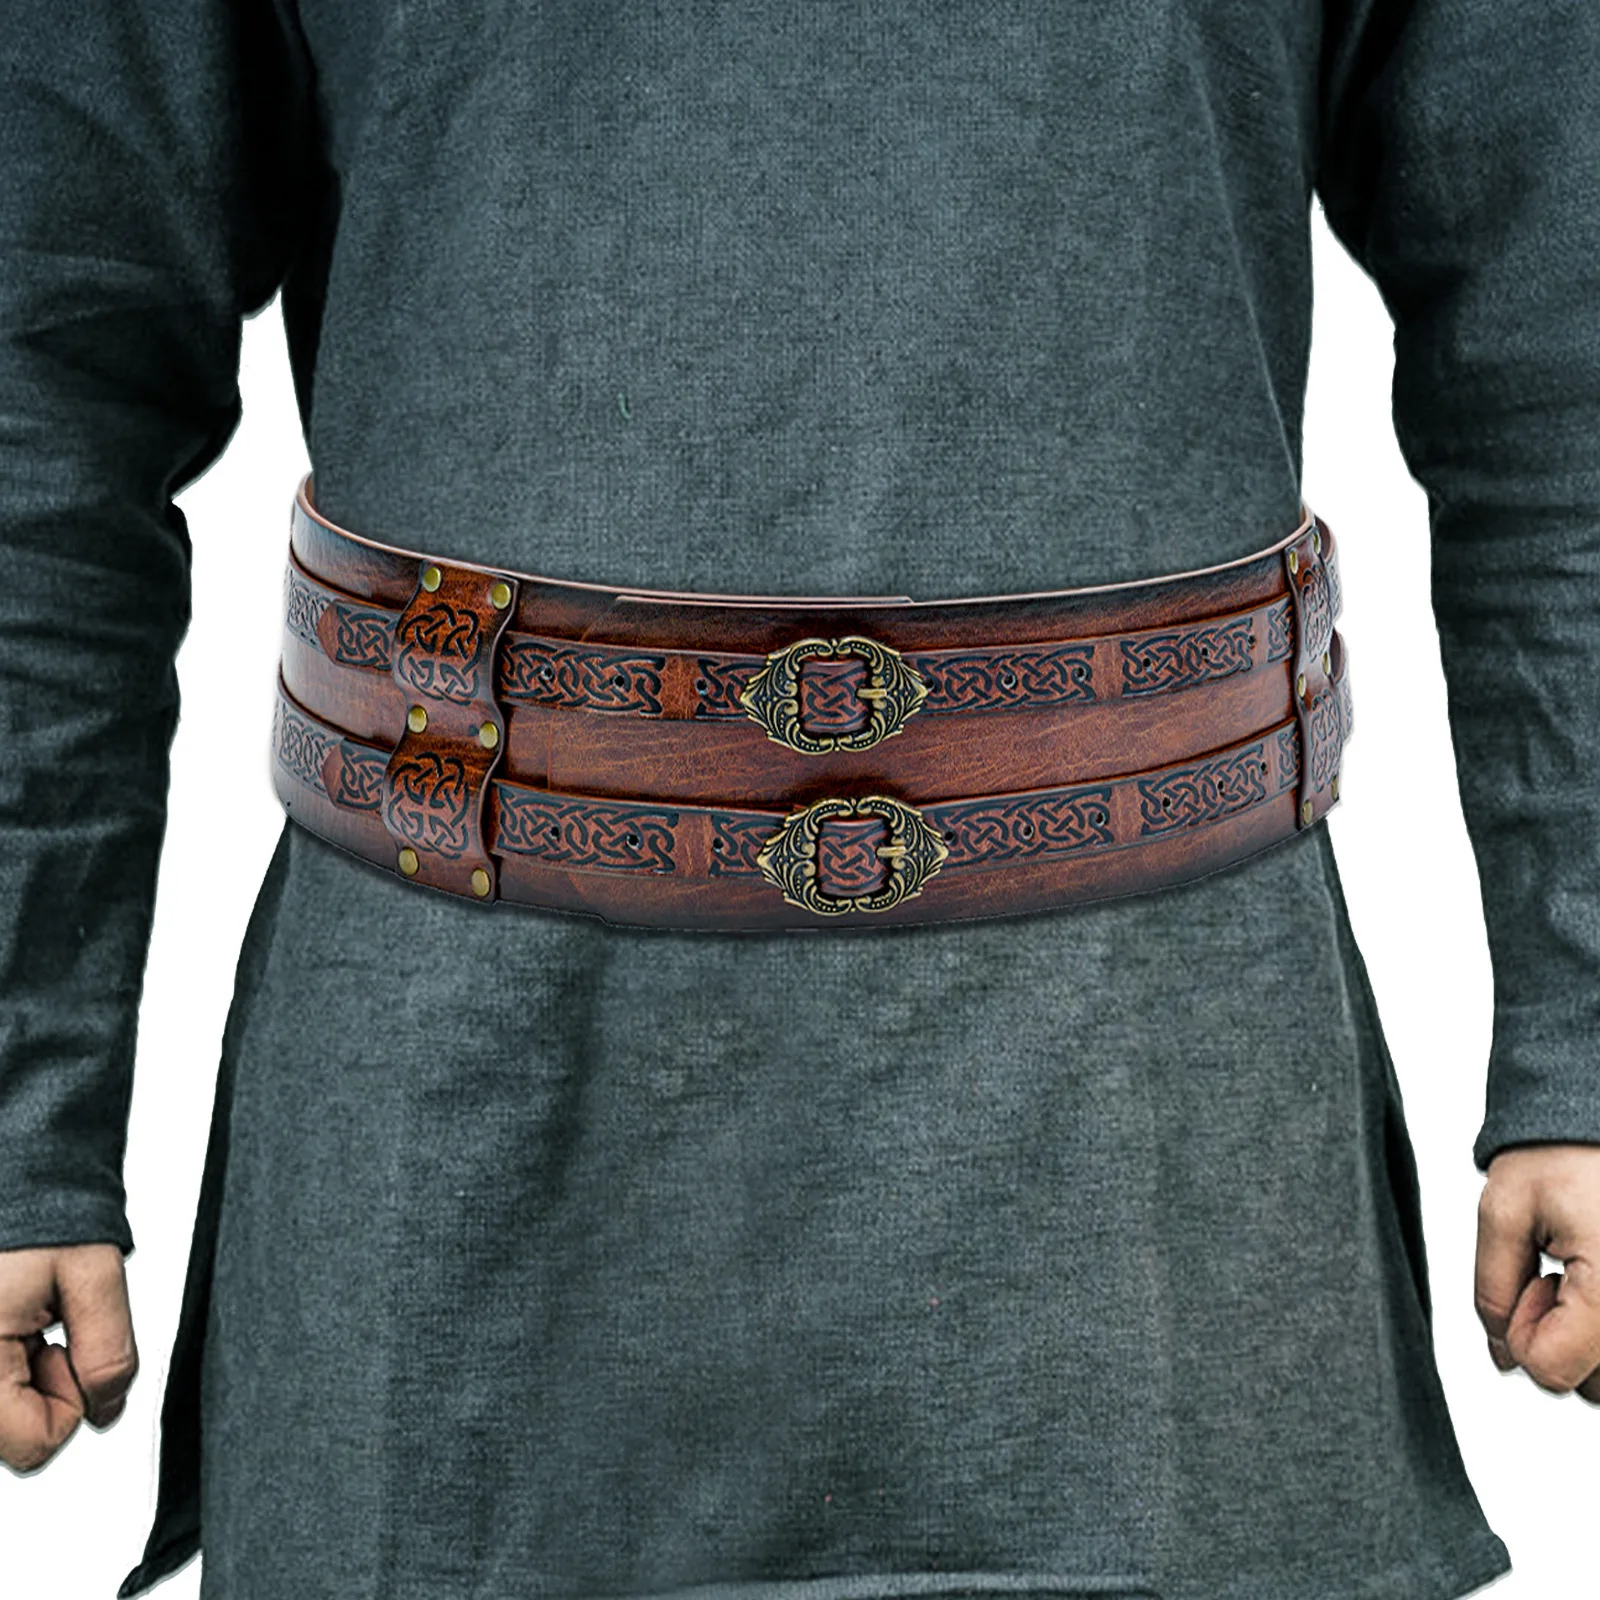 

Ремень-портупея для мужчин и женщин, кожаный кельтский пояс в стиле стимпанк, средневековый ширинный, с двойным ремешком в стиле викингов